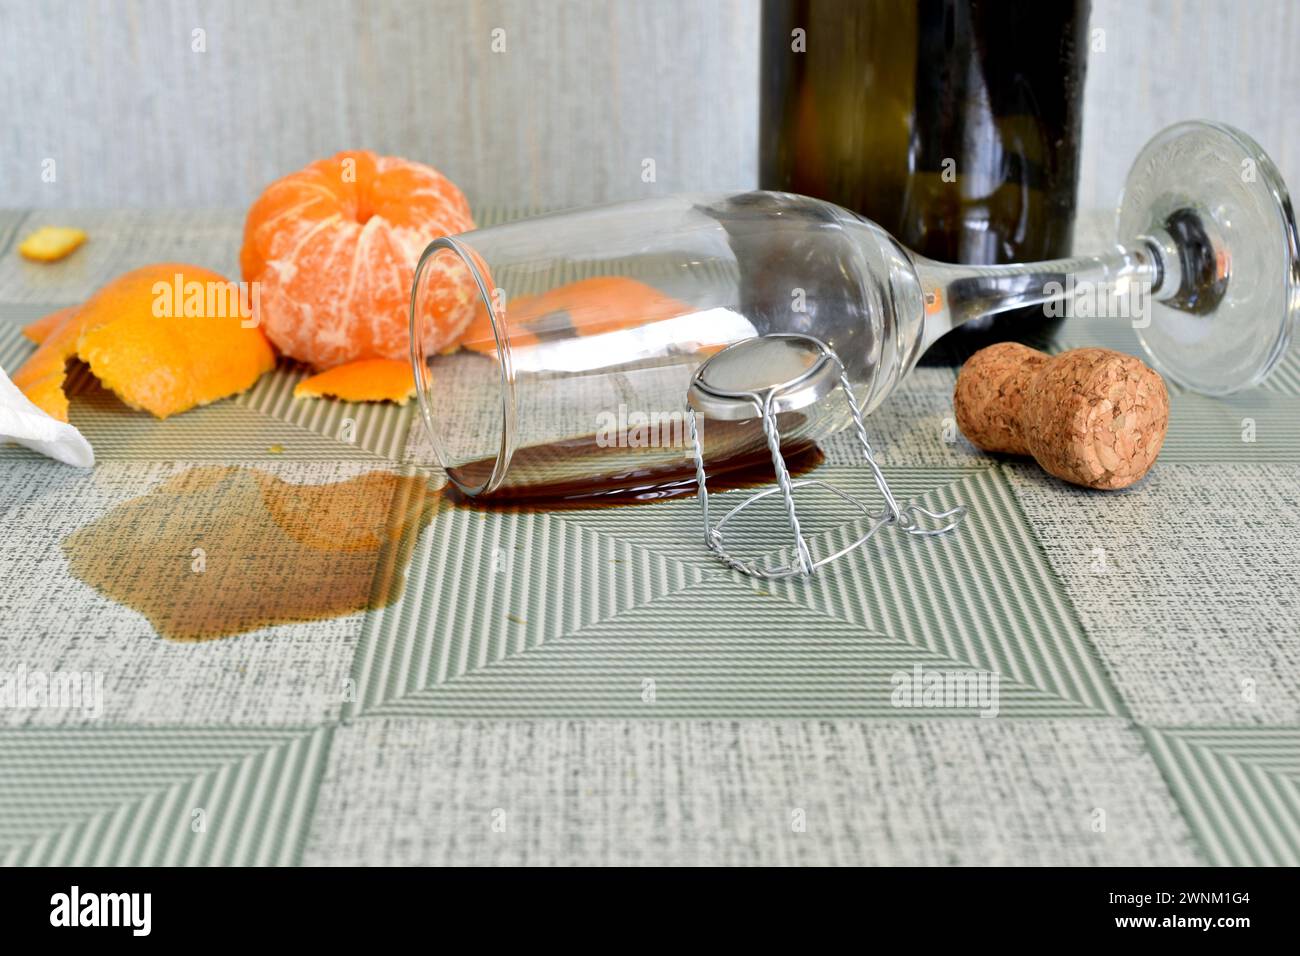 Das Glas liegt in einer Weinpfütze auf dem Tisch, daneben stehen eine leere Flasche und Obst. Stockfoto